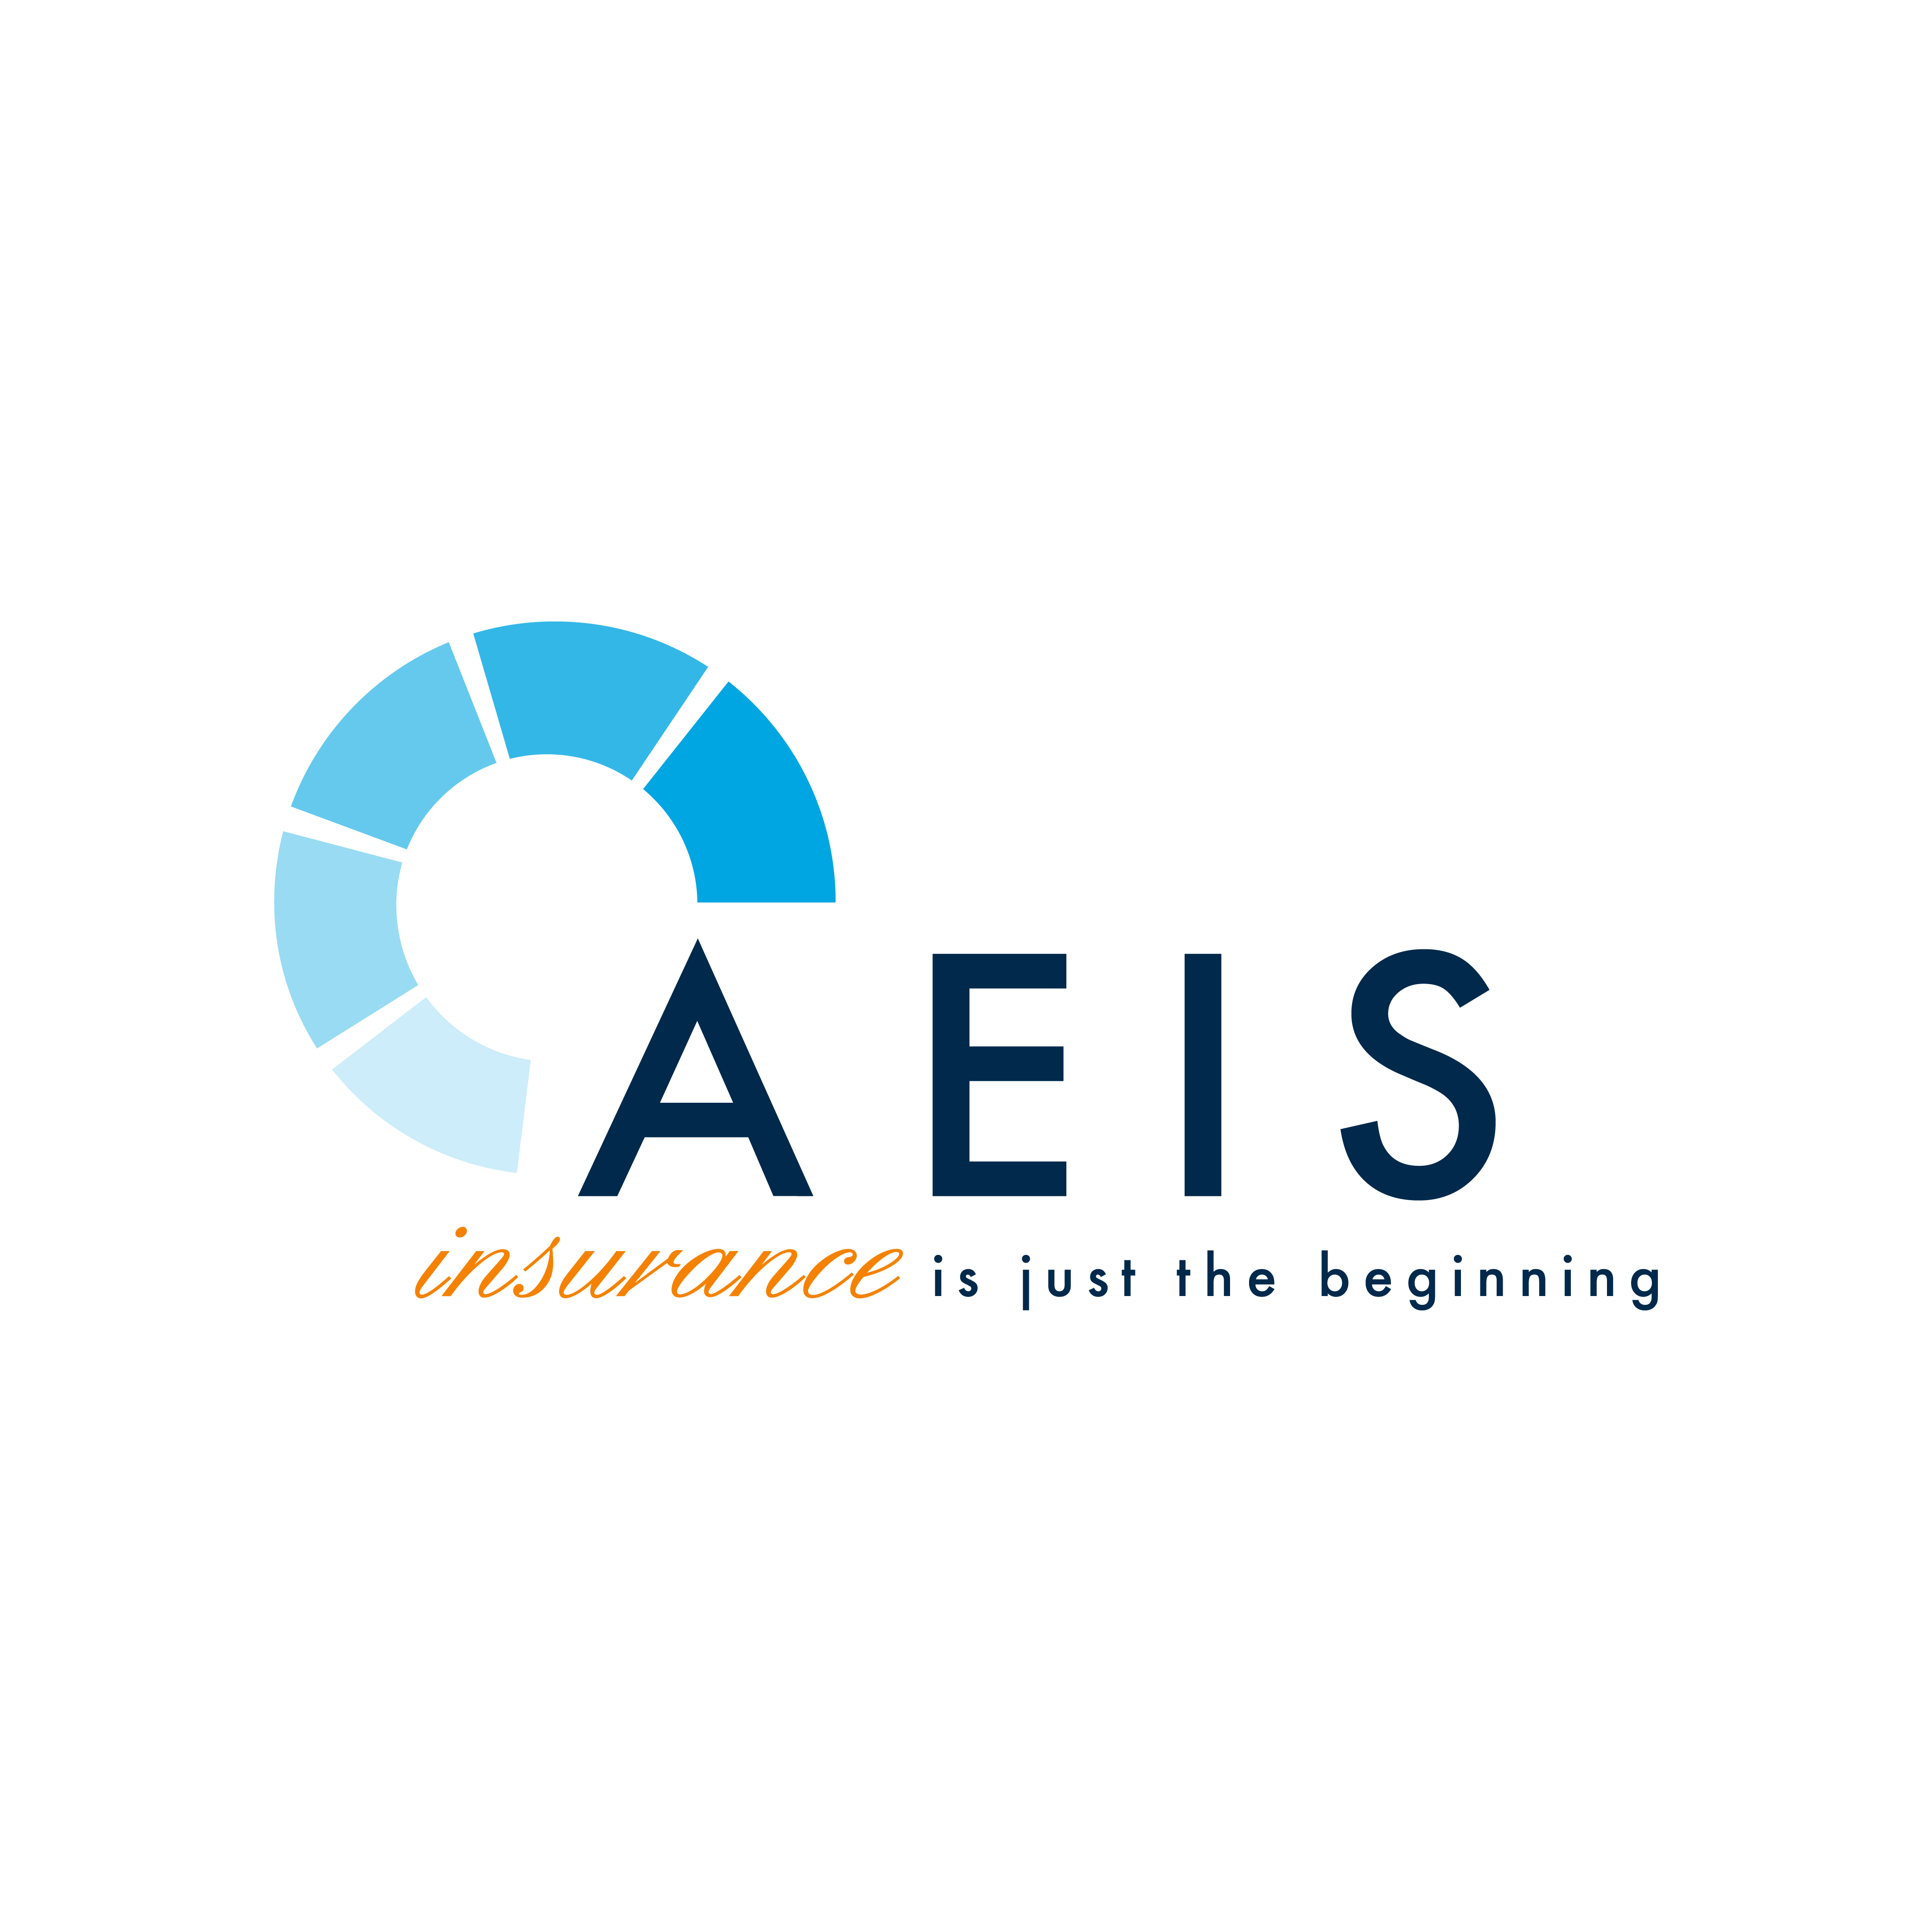 Aeis logo